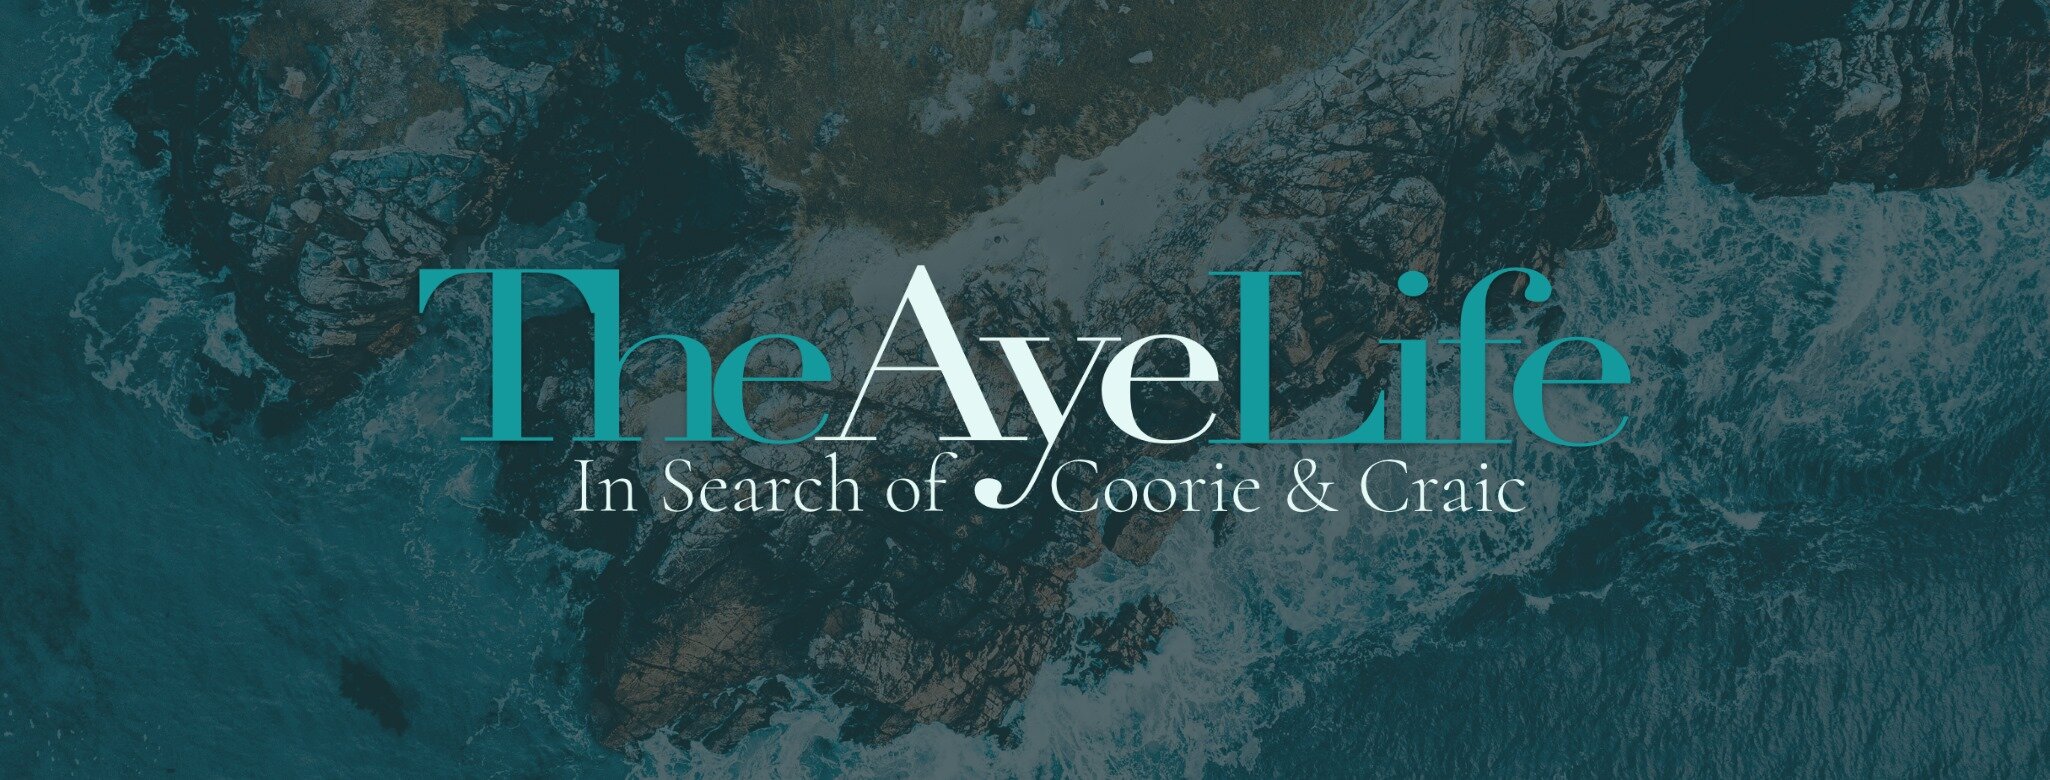 Aye life logo.jpg